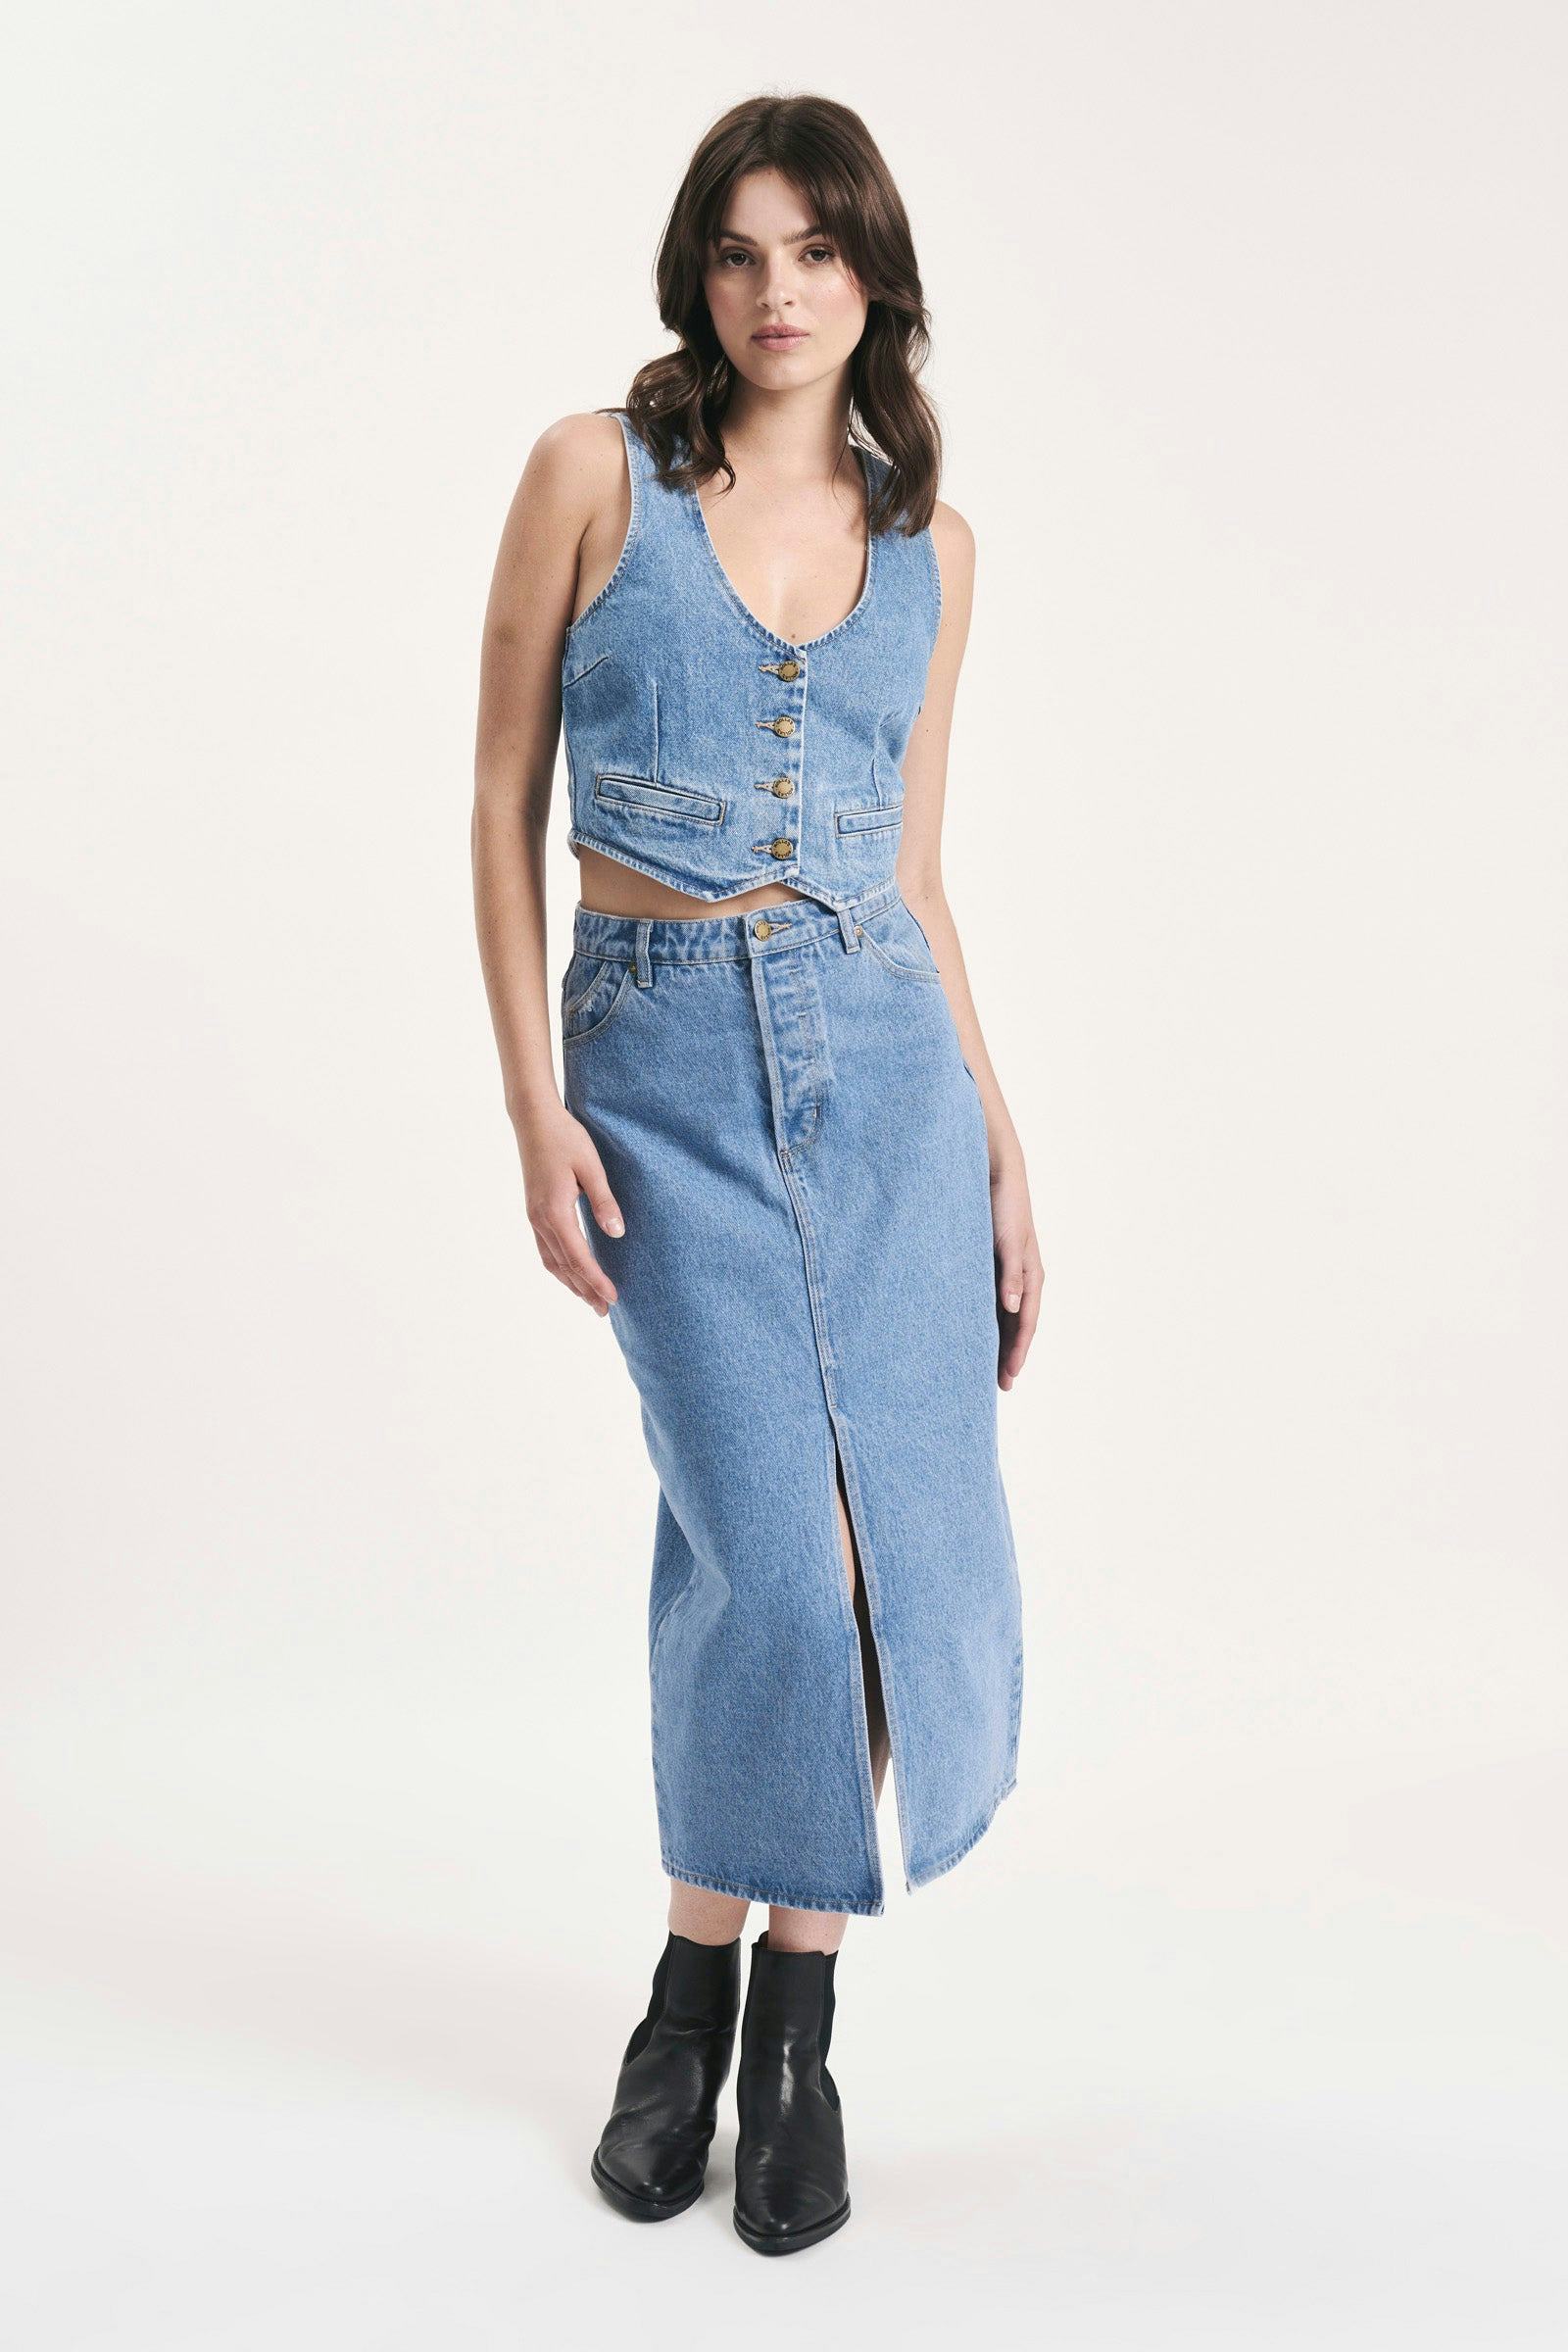 Buy Chicago Skirt - Chloe Online | Rollas Jeans